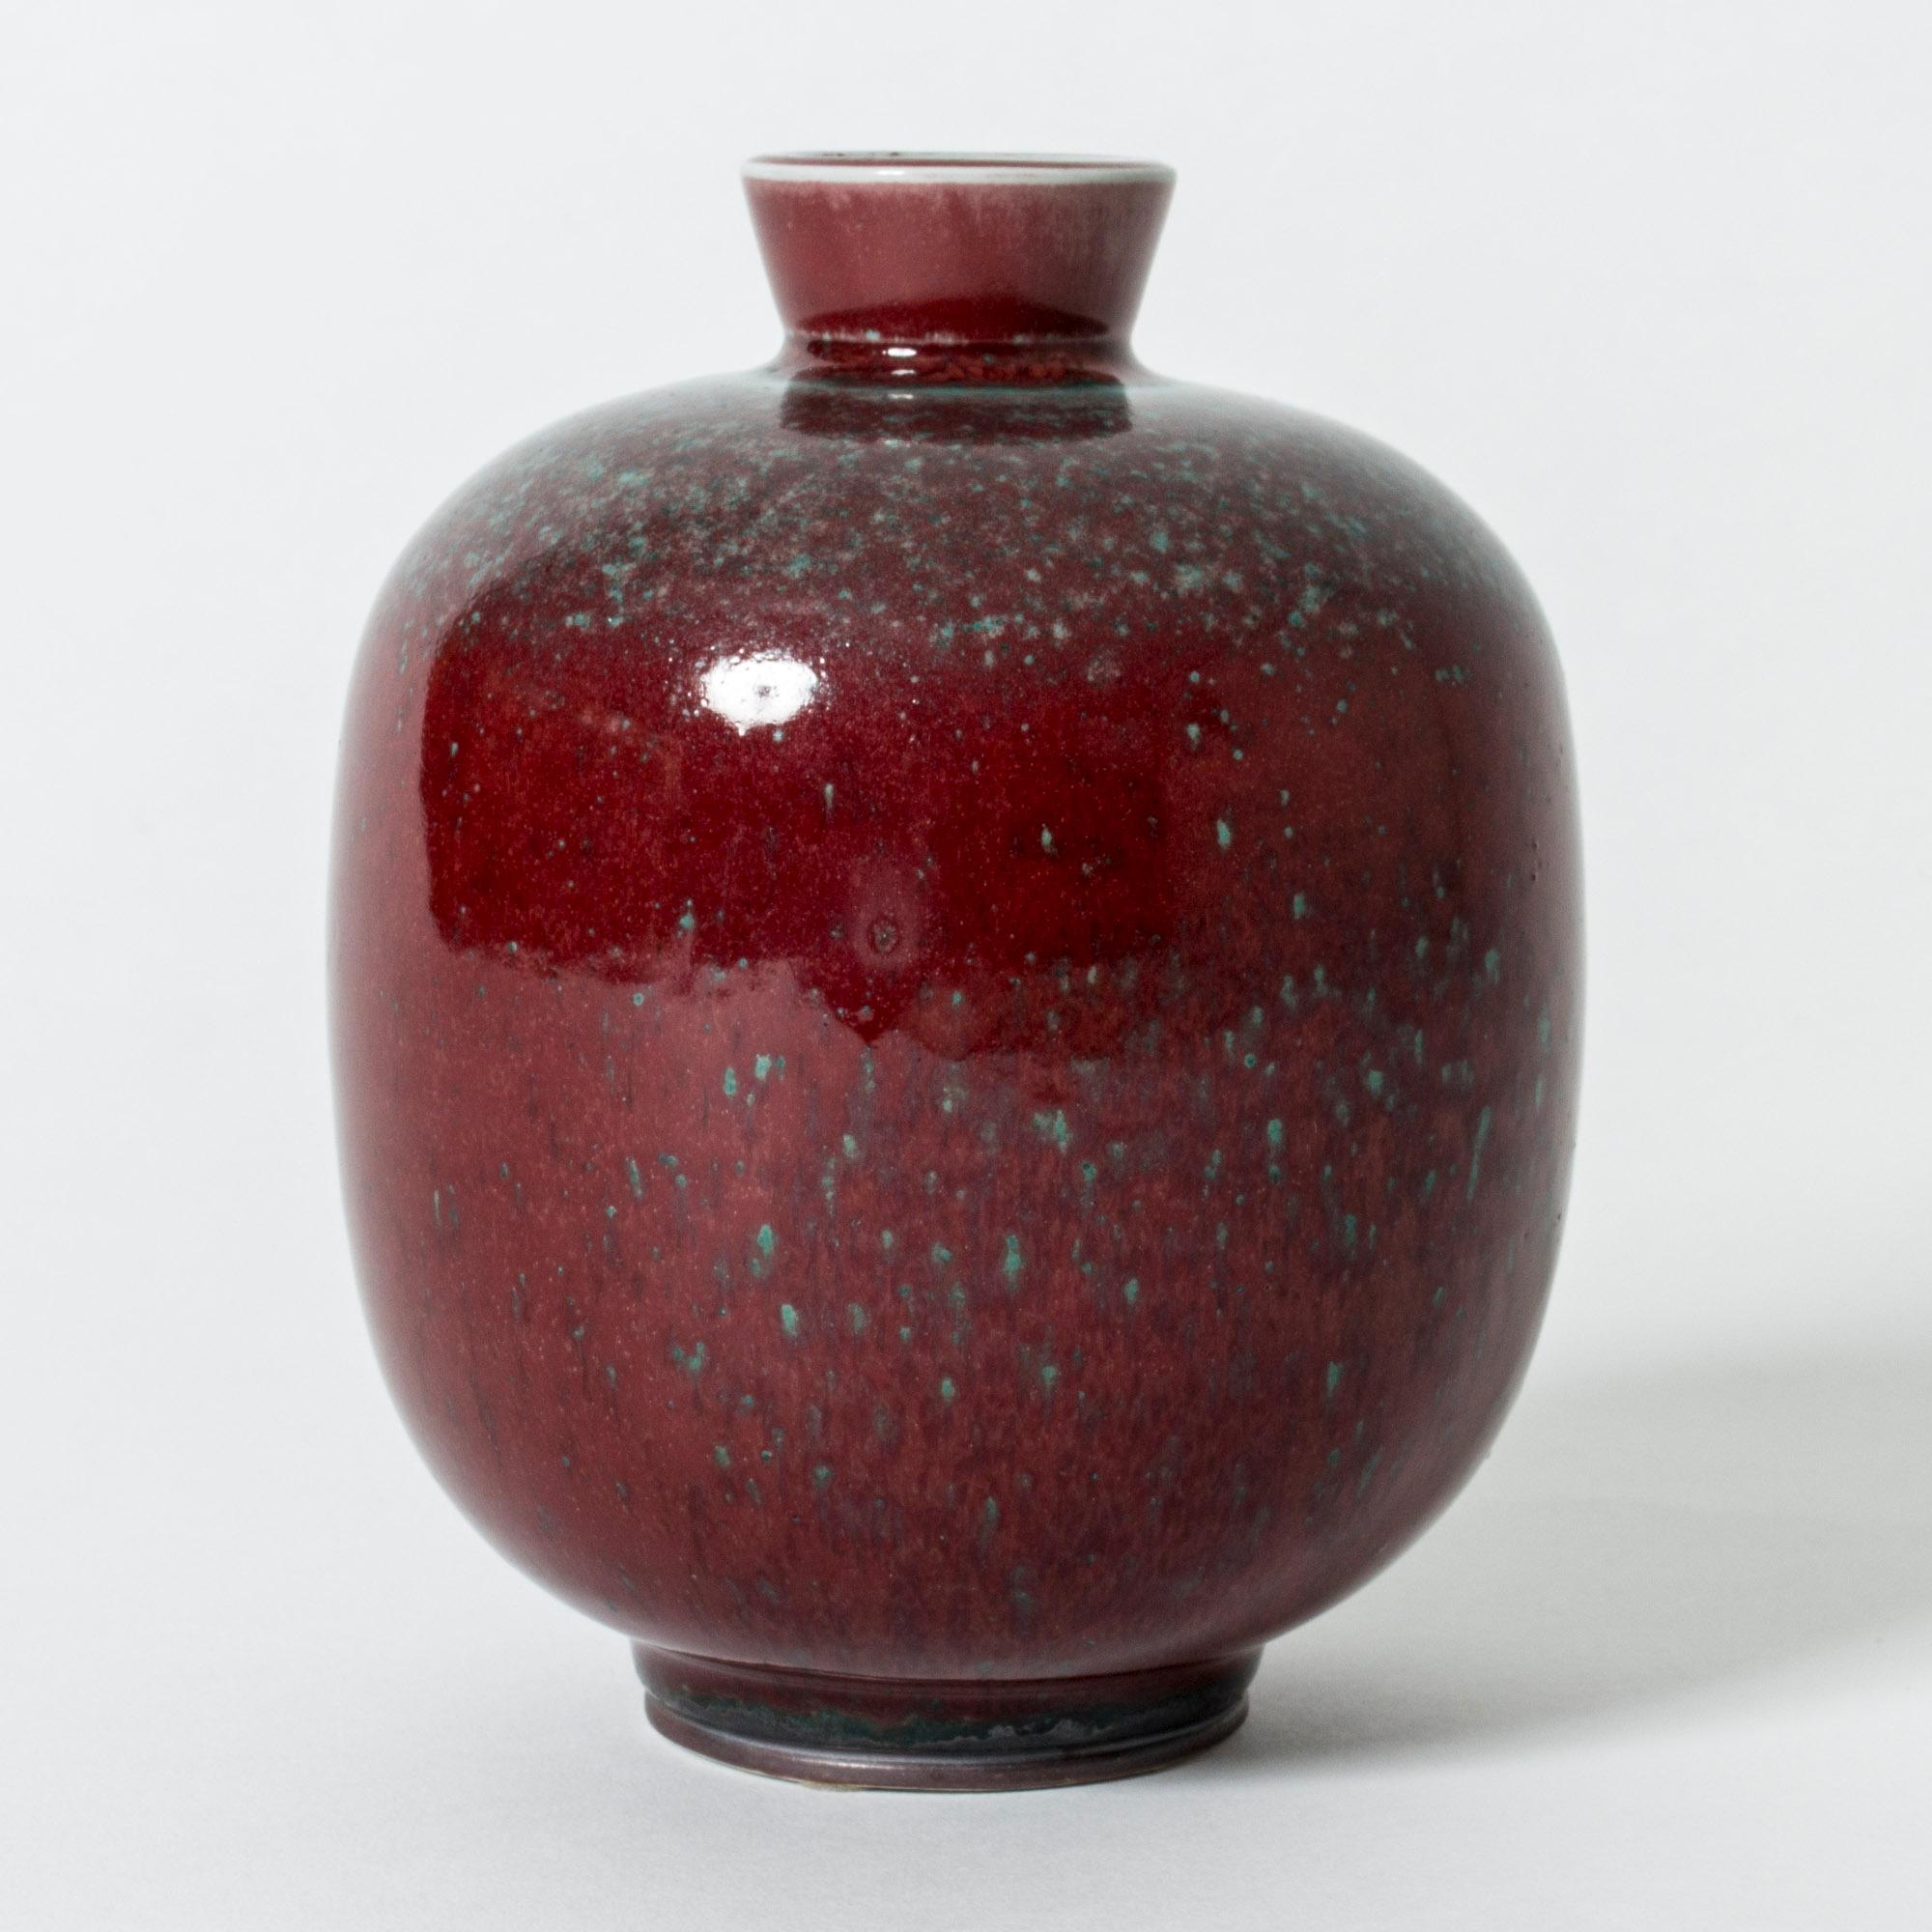 Vase en grès de Berndt Friberg de forme arrondie avec une glaçure profonde et brillante de couleur sang de bœuf, contrastée par des mouchetures bleu-vert.